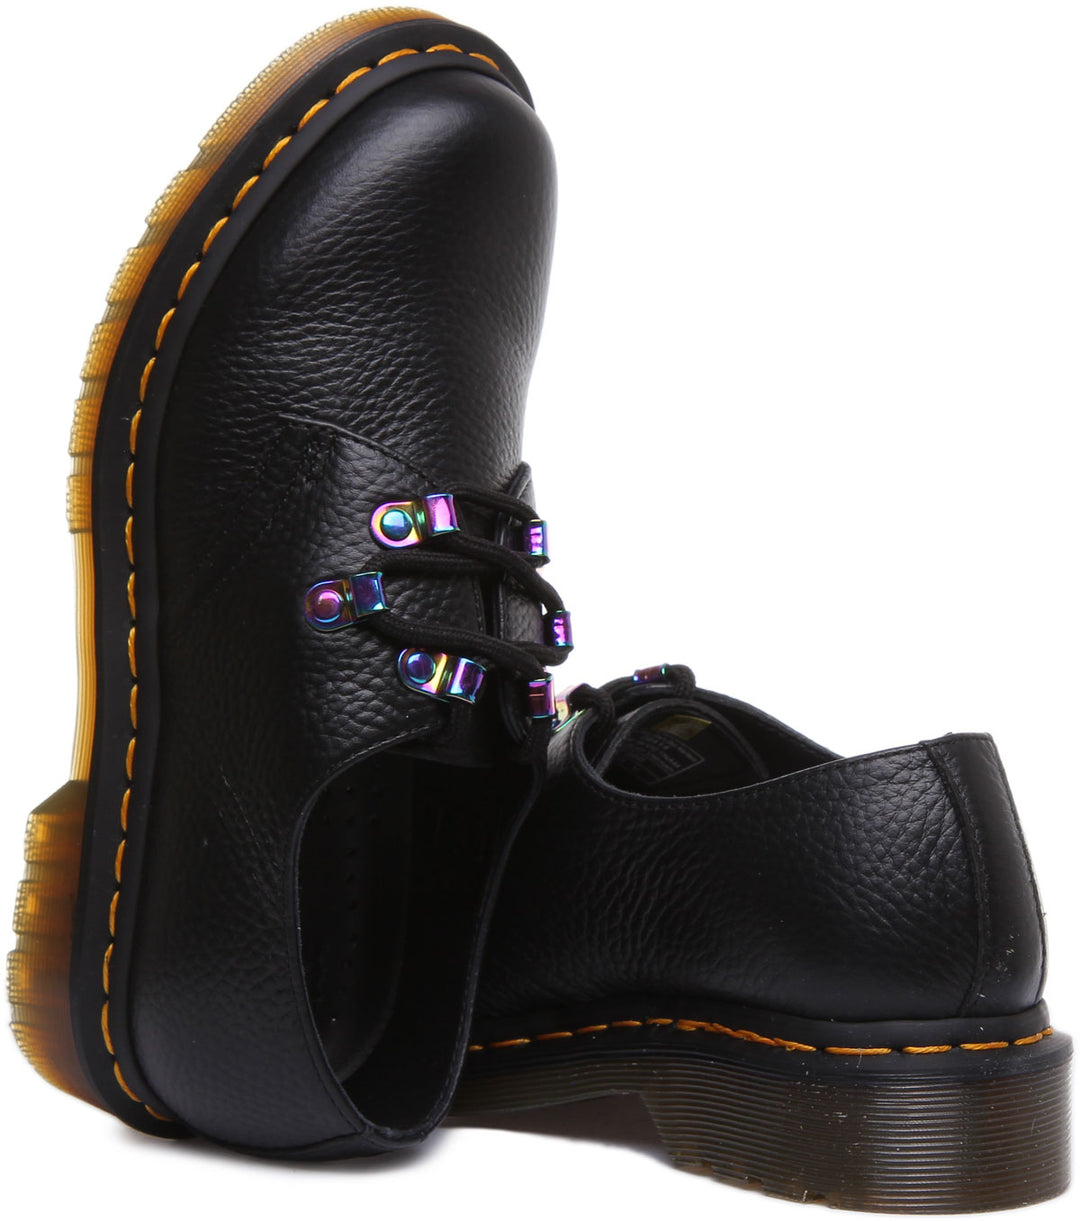 Dr Martens 1461 Iridescent Chaussures à lacets en cuir nappa mouliné pour femmes en noir